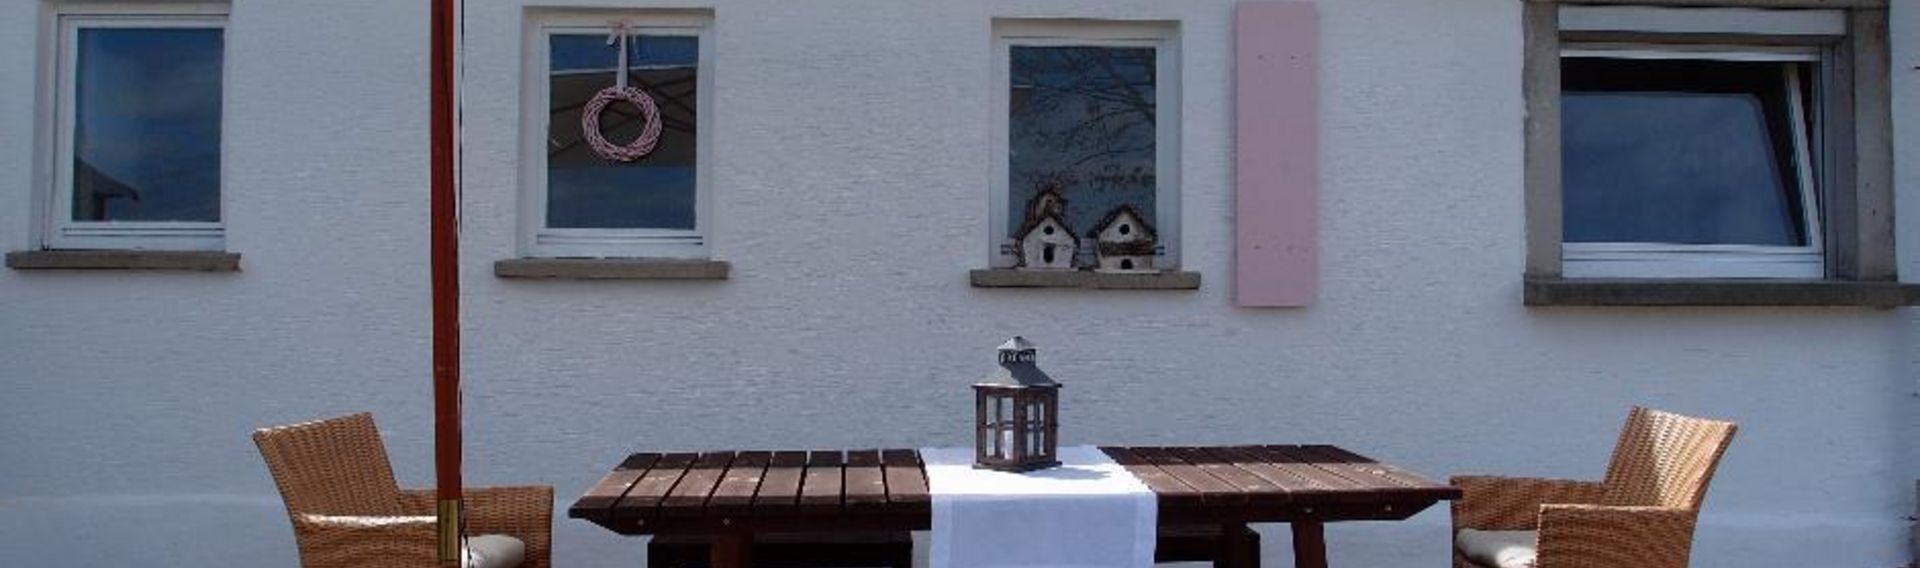 Ferienhaus s`bunde Heisle – Hohenlohe mit Hund